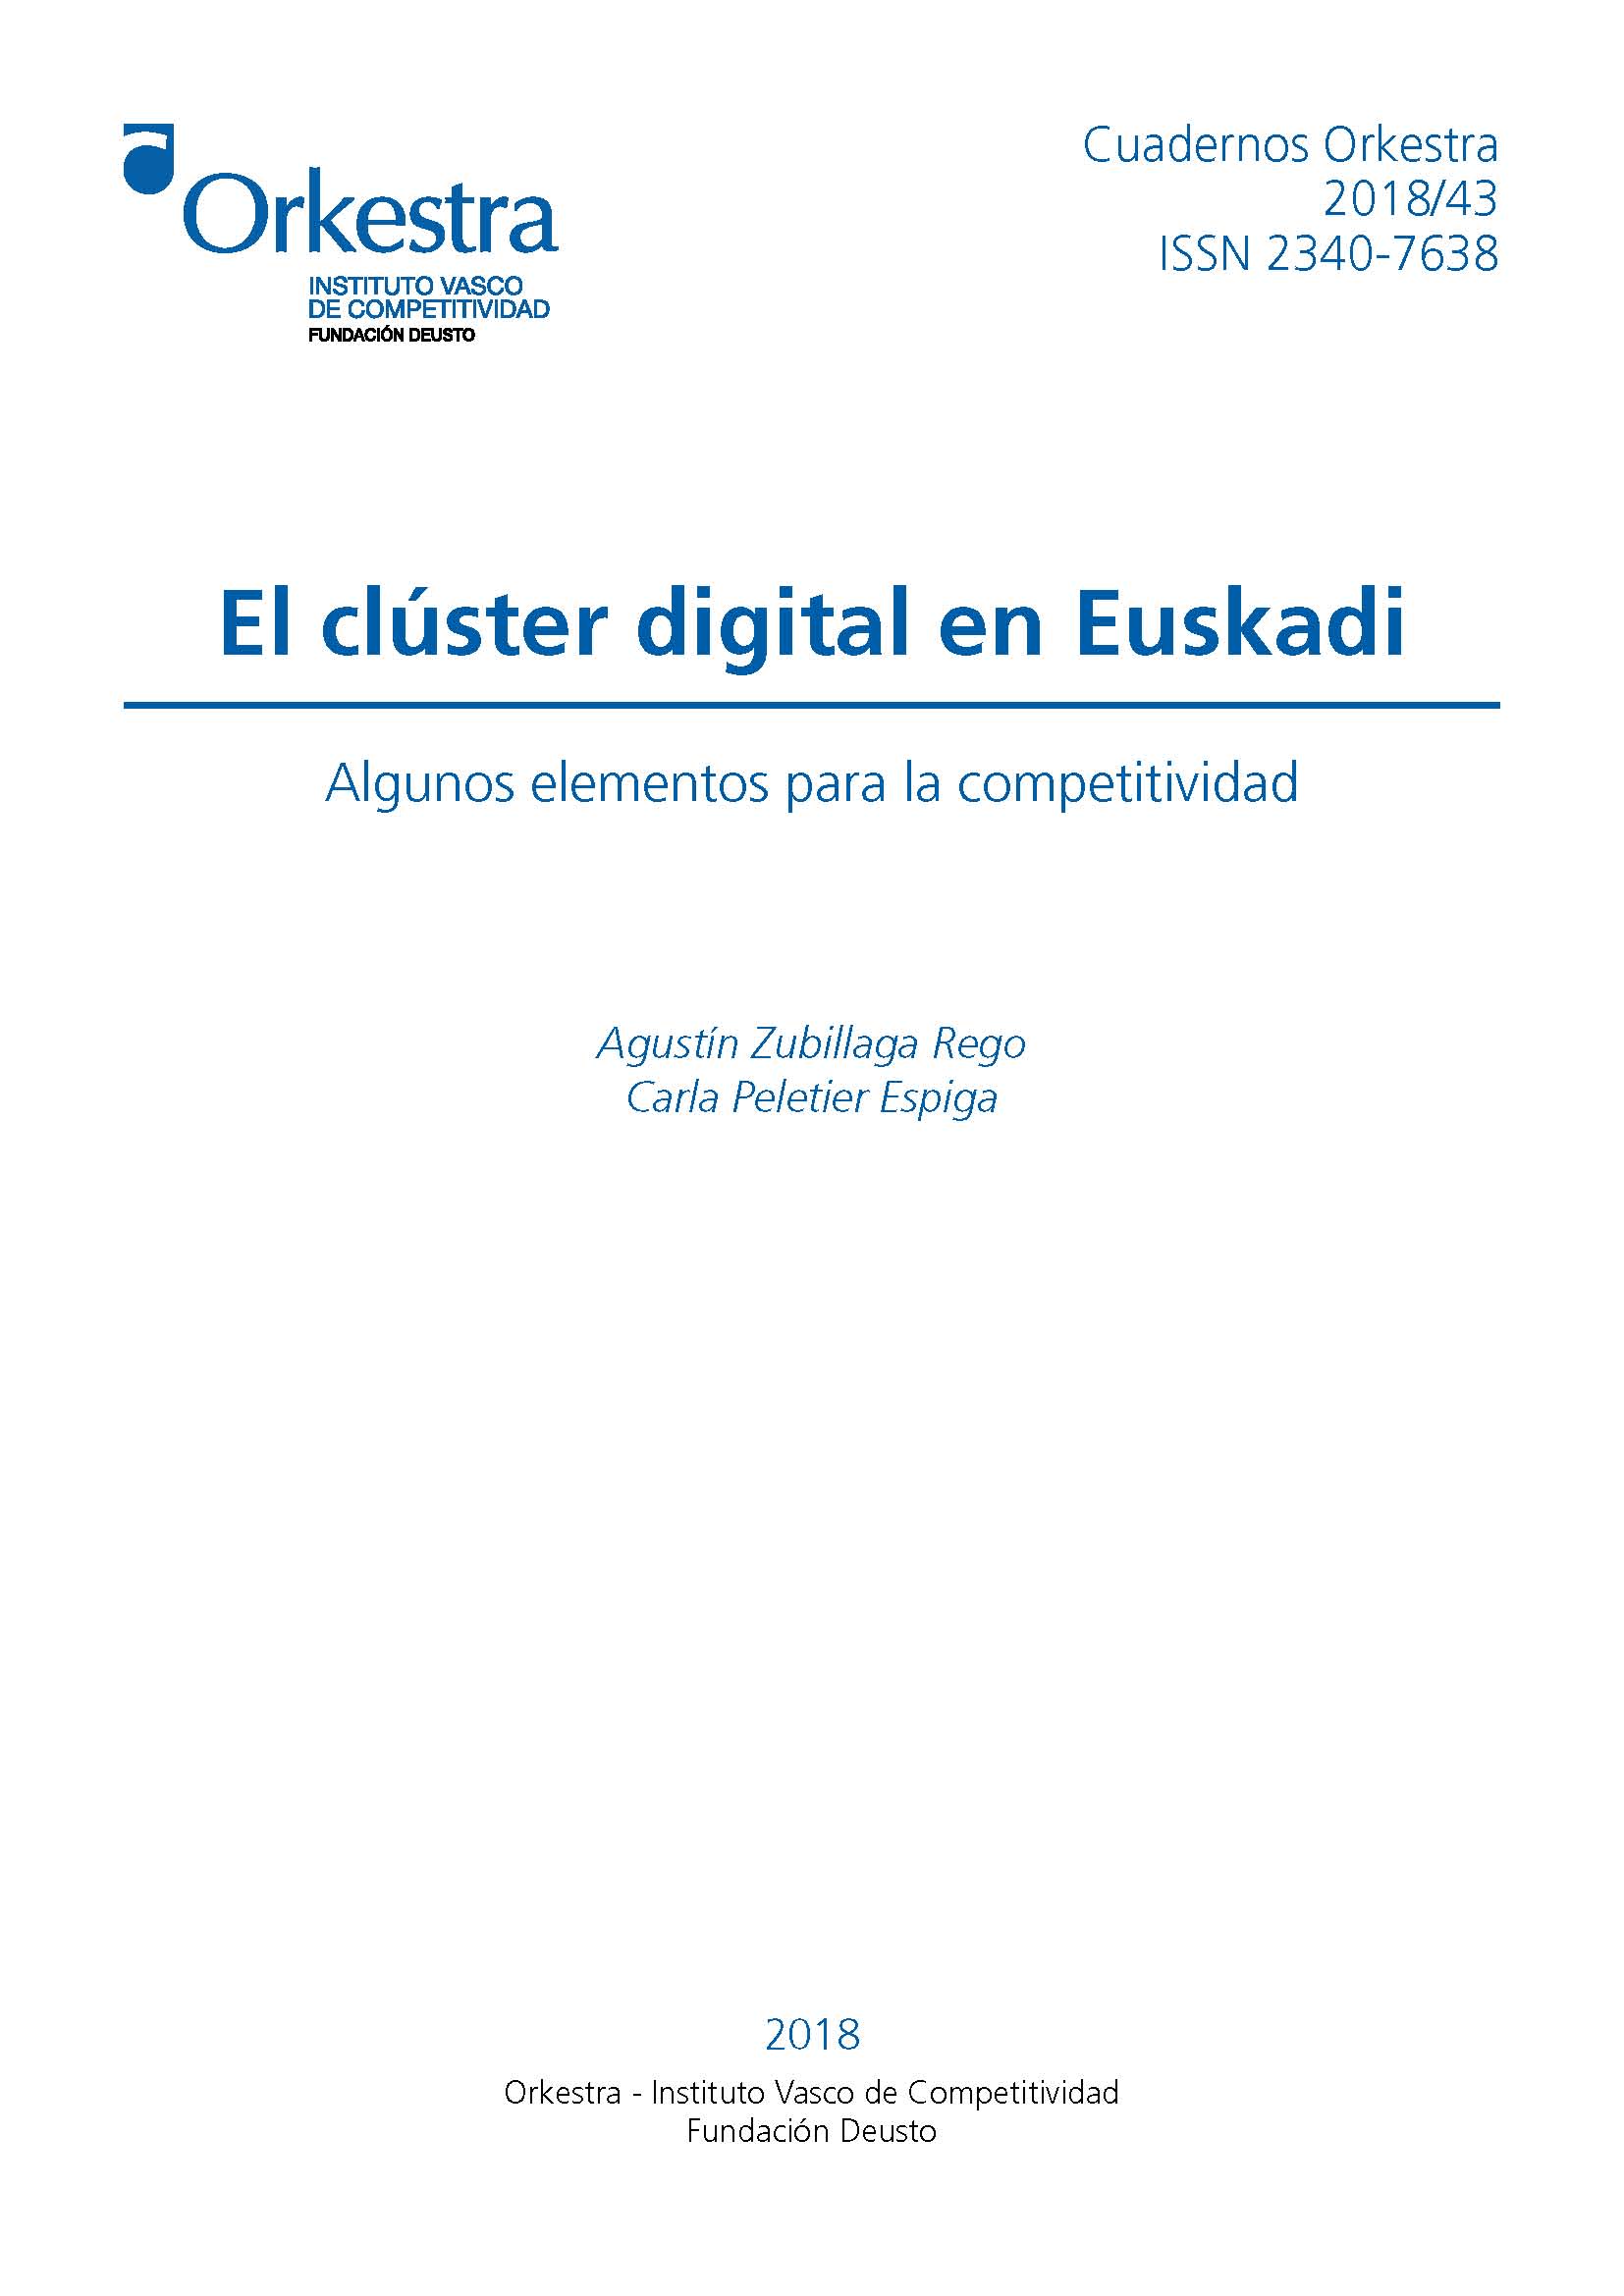 Economía y Sociedad digitales en el País Vasco